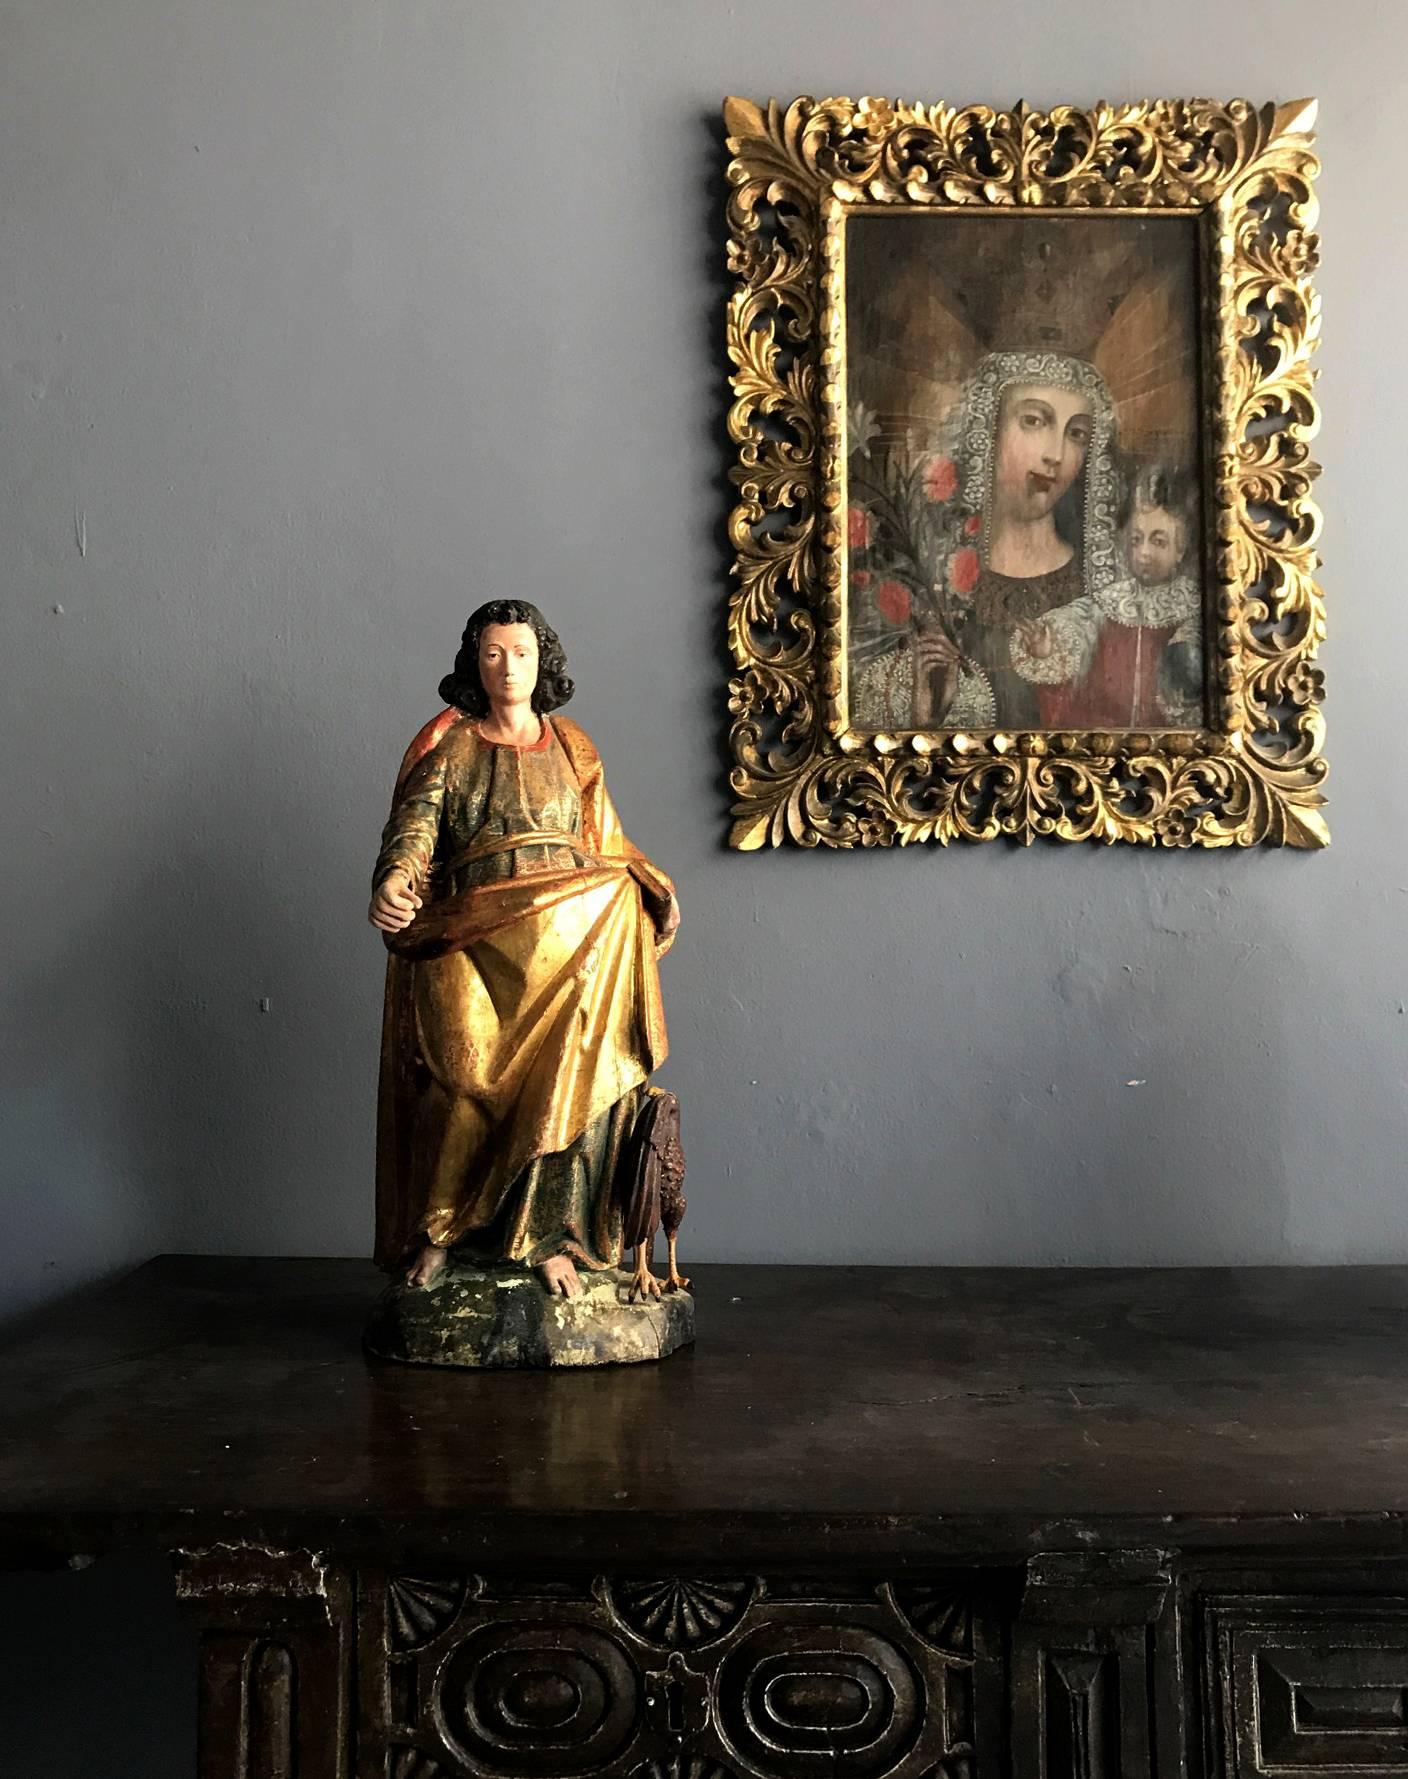 Superbe statue de Saint Jean en bois doré, XIXe siècle, peut-être plus tôt, provenant du Mexique, de style colonial espagnol, avec un décor de peinture polychrome. Saint Jean est représenté comme une figure royale avec des robes drapées, un bras